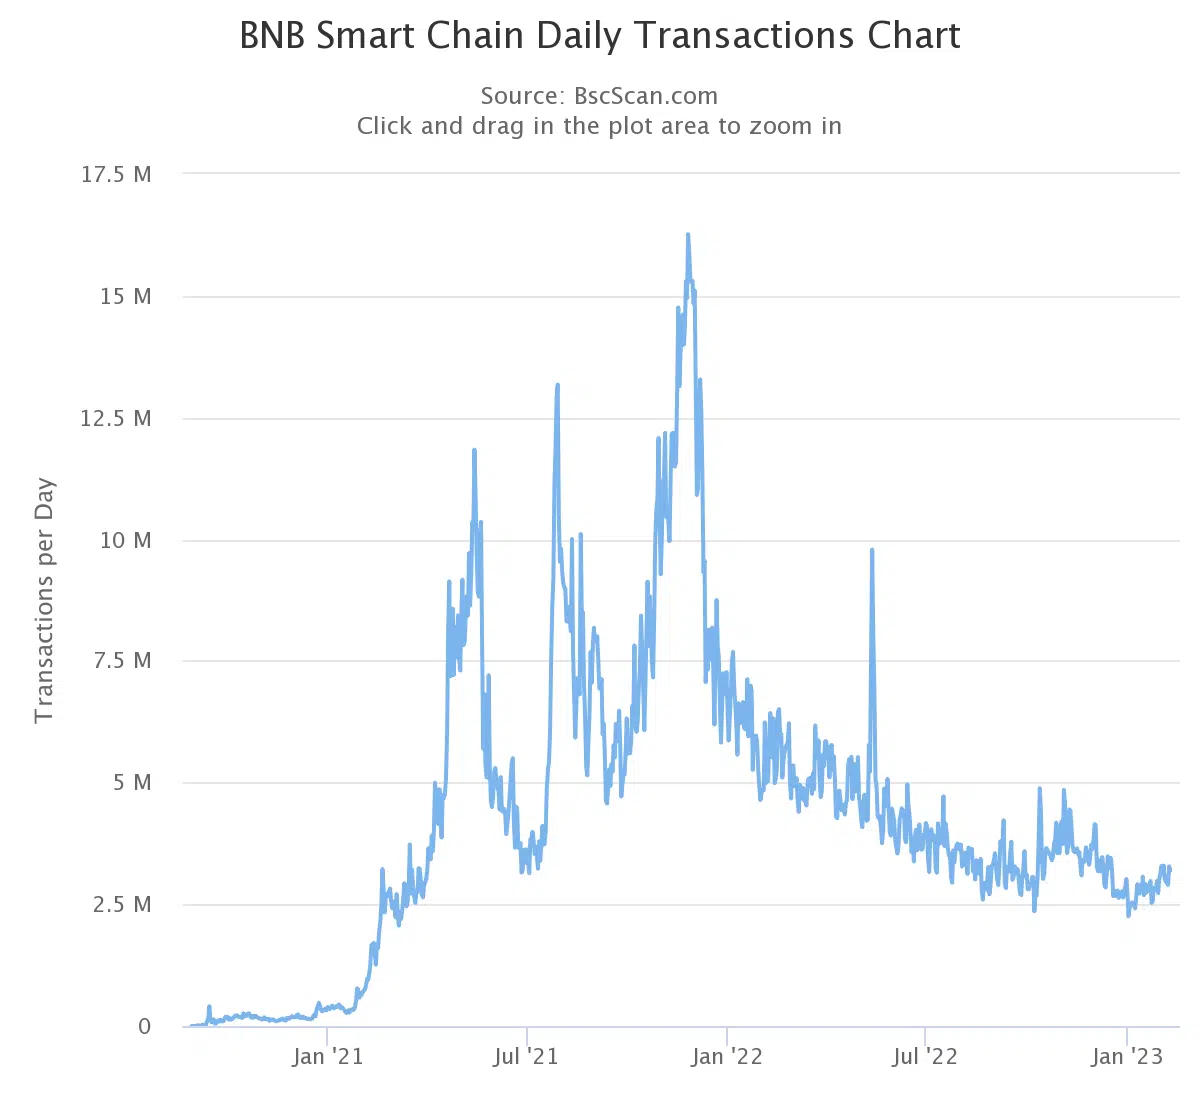 BNB chain transactions